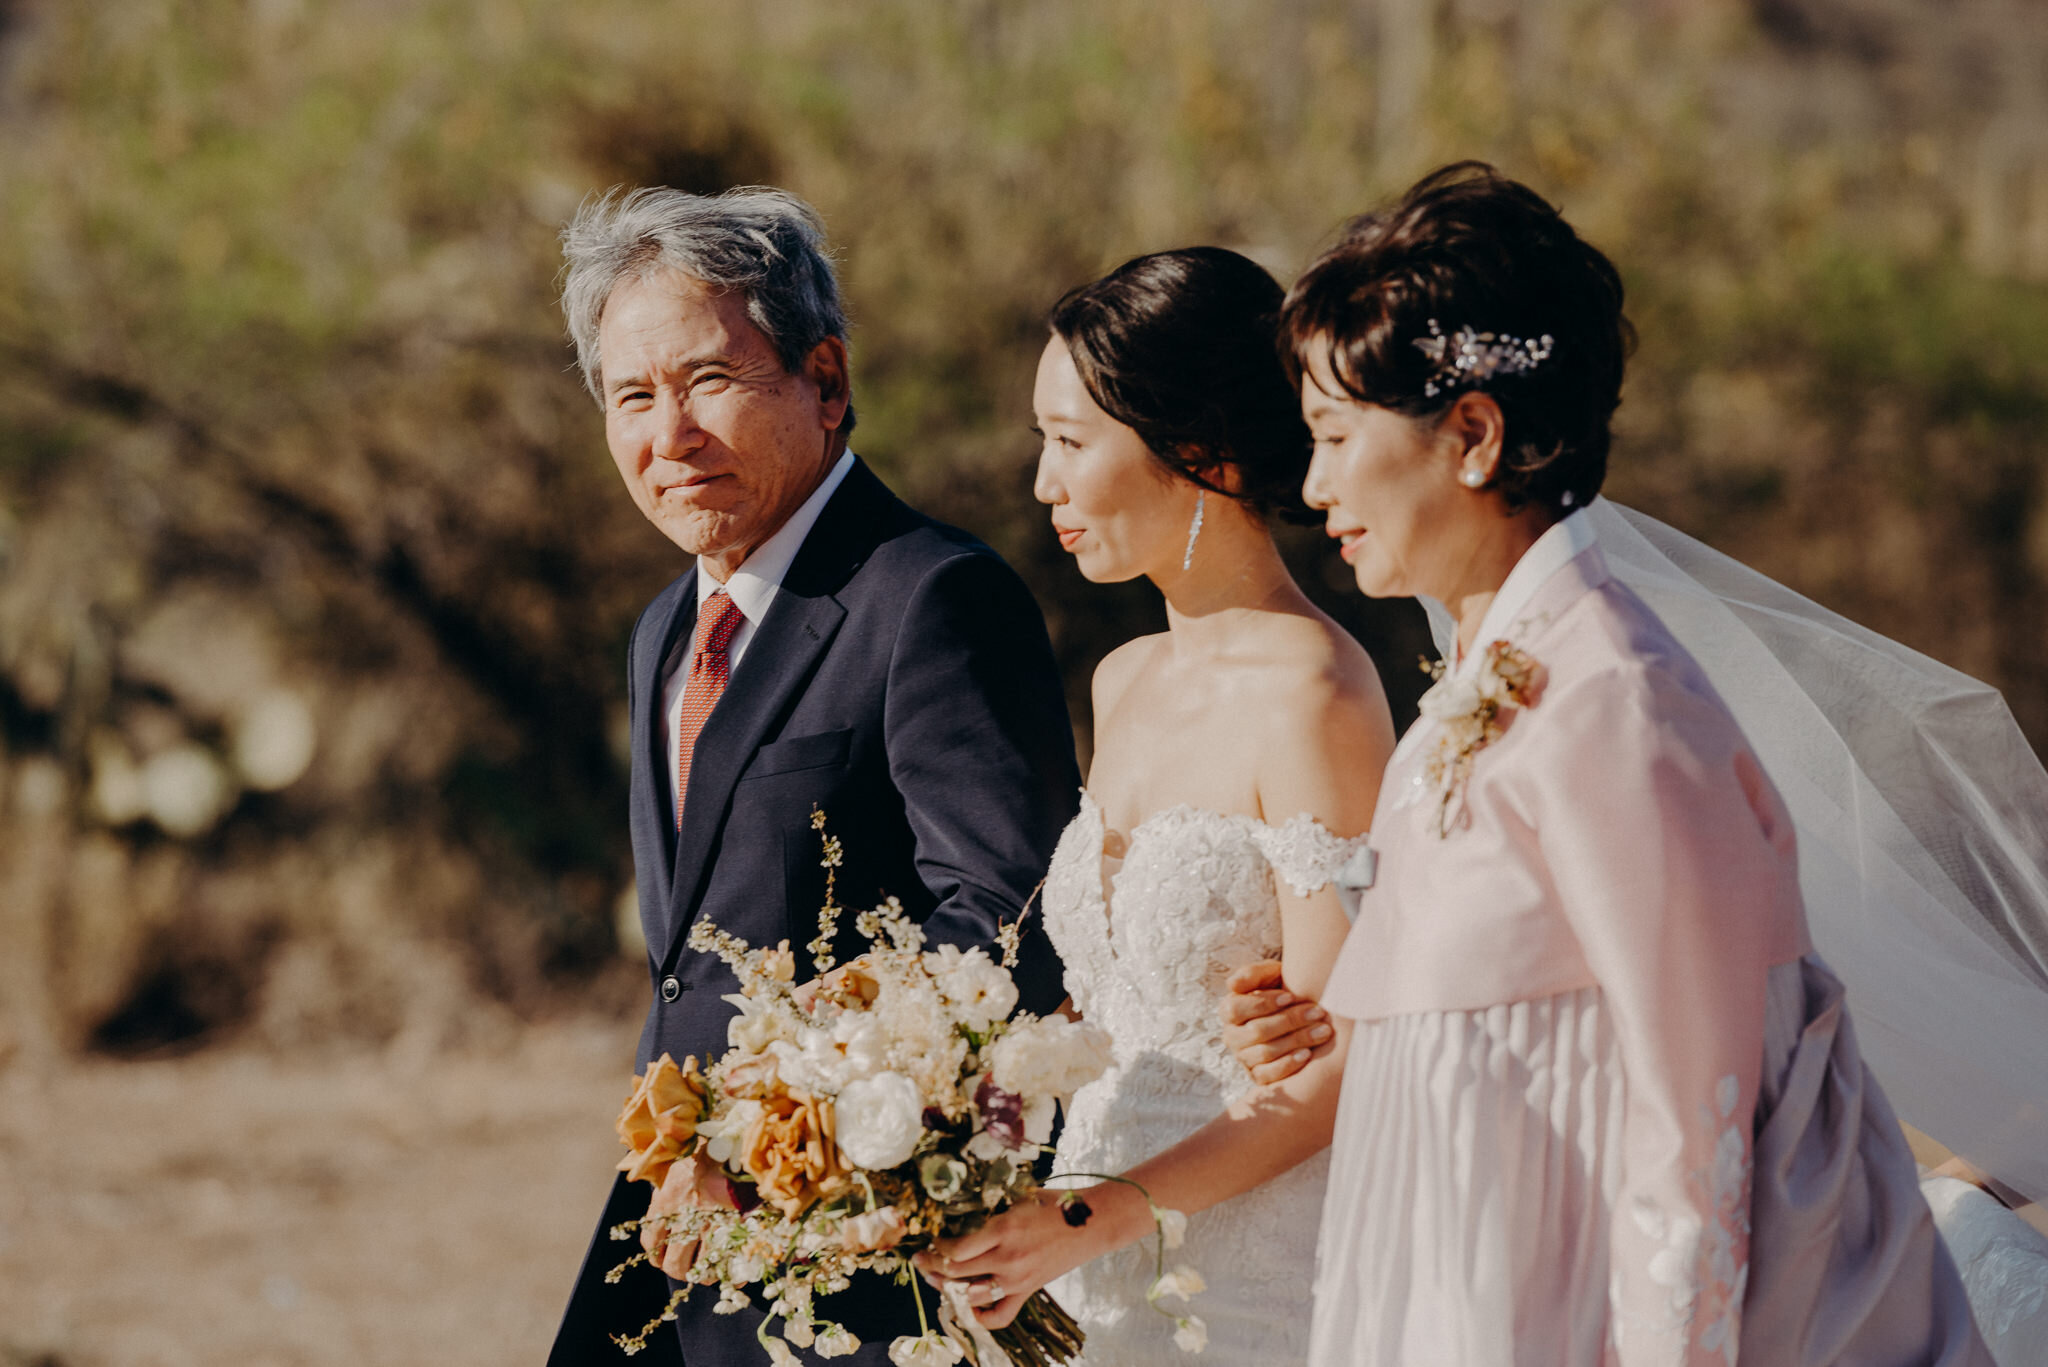 california wedding photograhers - desert elopement - supersition mountains - isaiahandtaylor.com-67.jpg